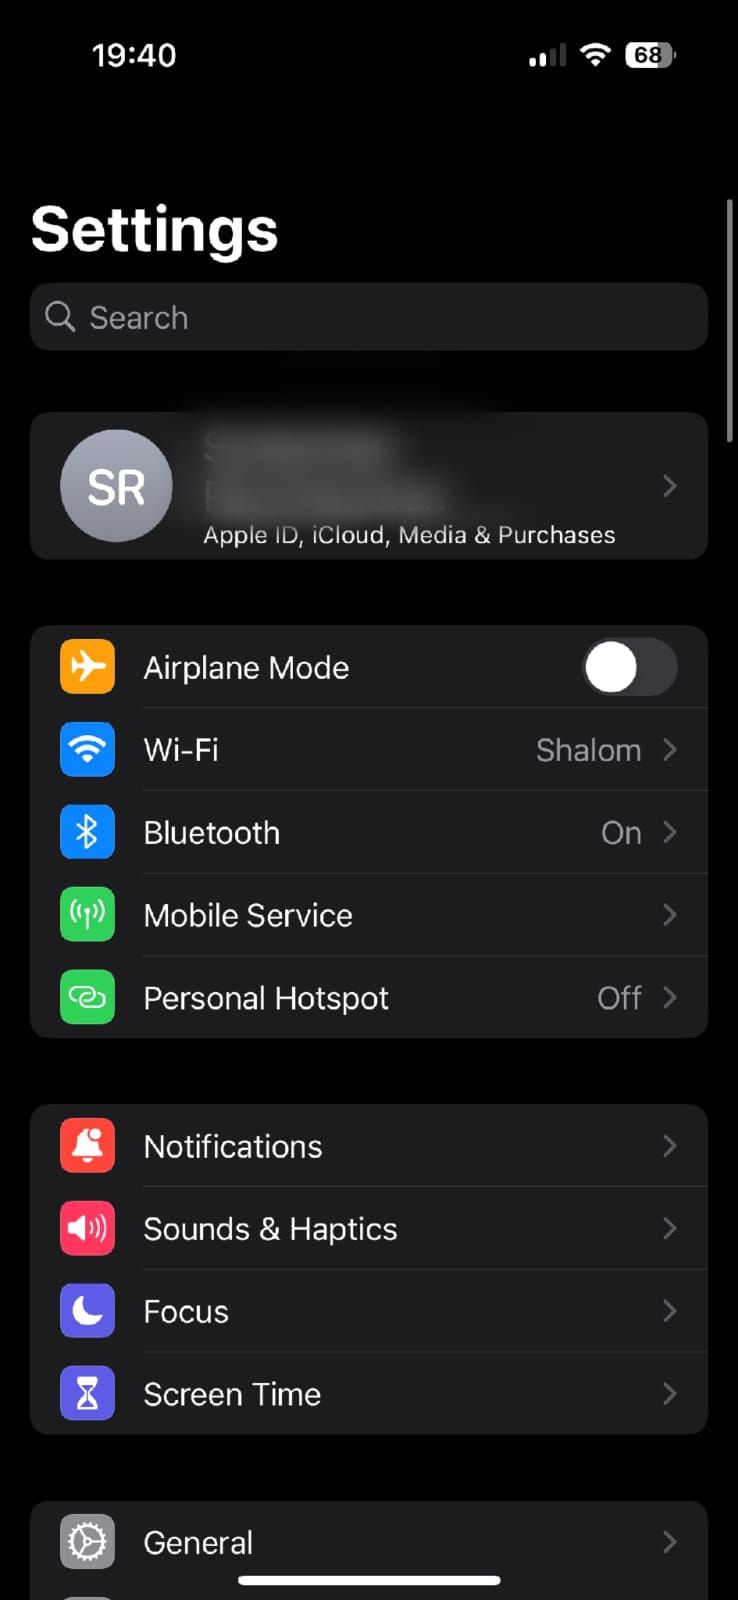 Captura de tela mostrada nas configurações do iPhone